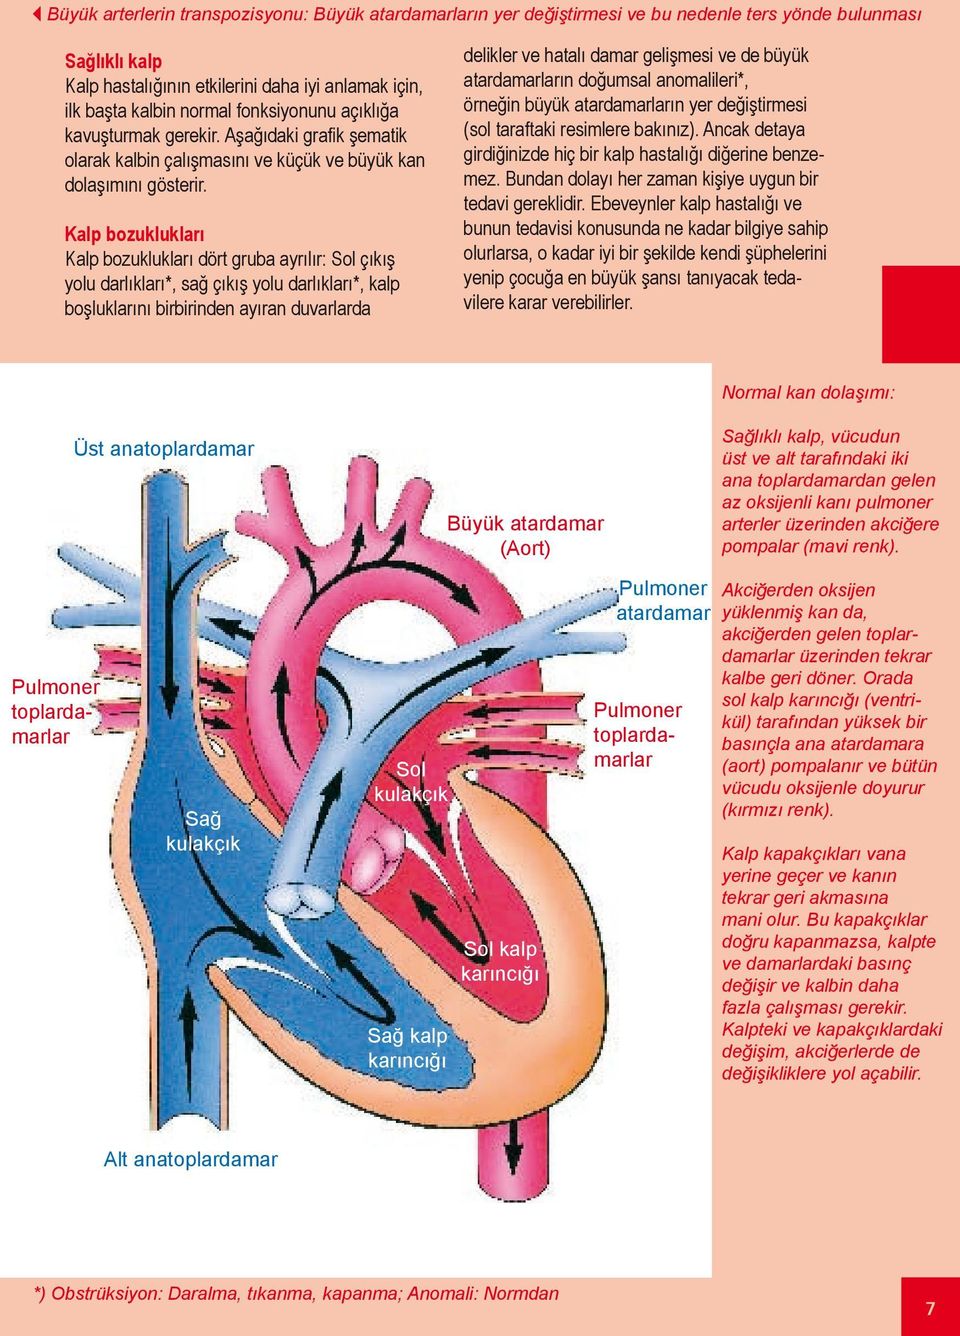 Kalp bozuklukları Kalp bozuklukları dört gruba ayrılır: Sol çıkış yolu darlıkları*, sağ çıkış yolu darlıkları*, kalp boşluklarını birbirinden ayıran duvarlarda delikler ve hatalı damar gelişmesi ve